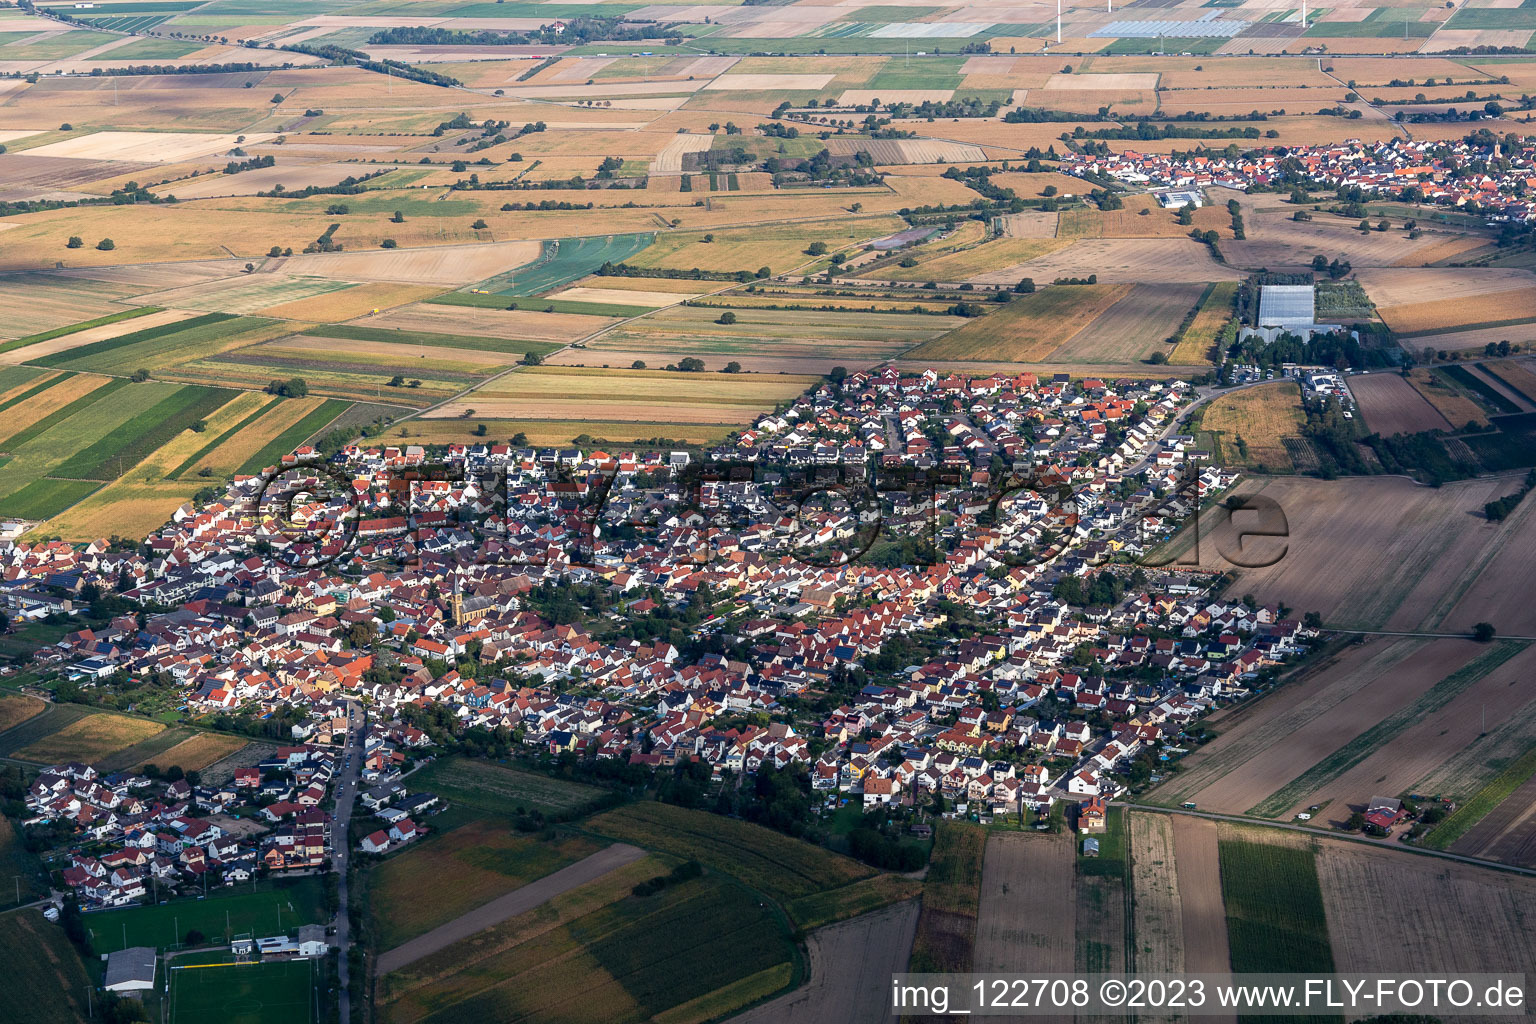 Ortsteil Mechtersheim in Römerberg im Bundesland Rheinland-Pfalz, Deutschland von der Drohne aus gesehen